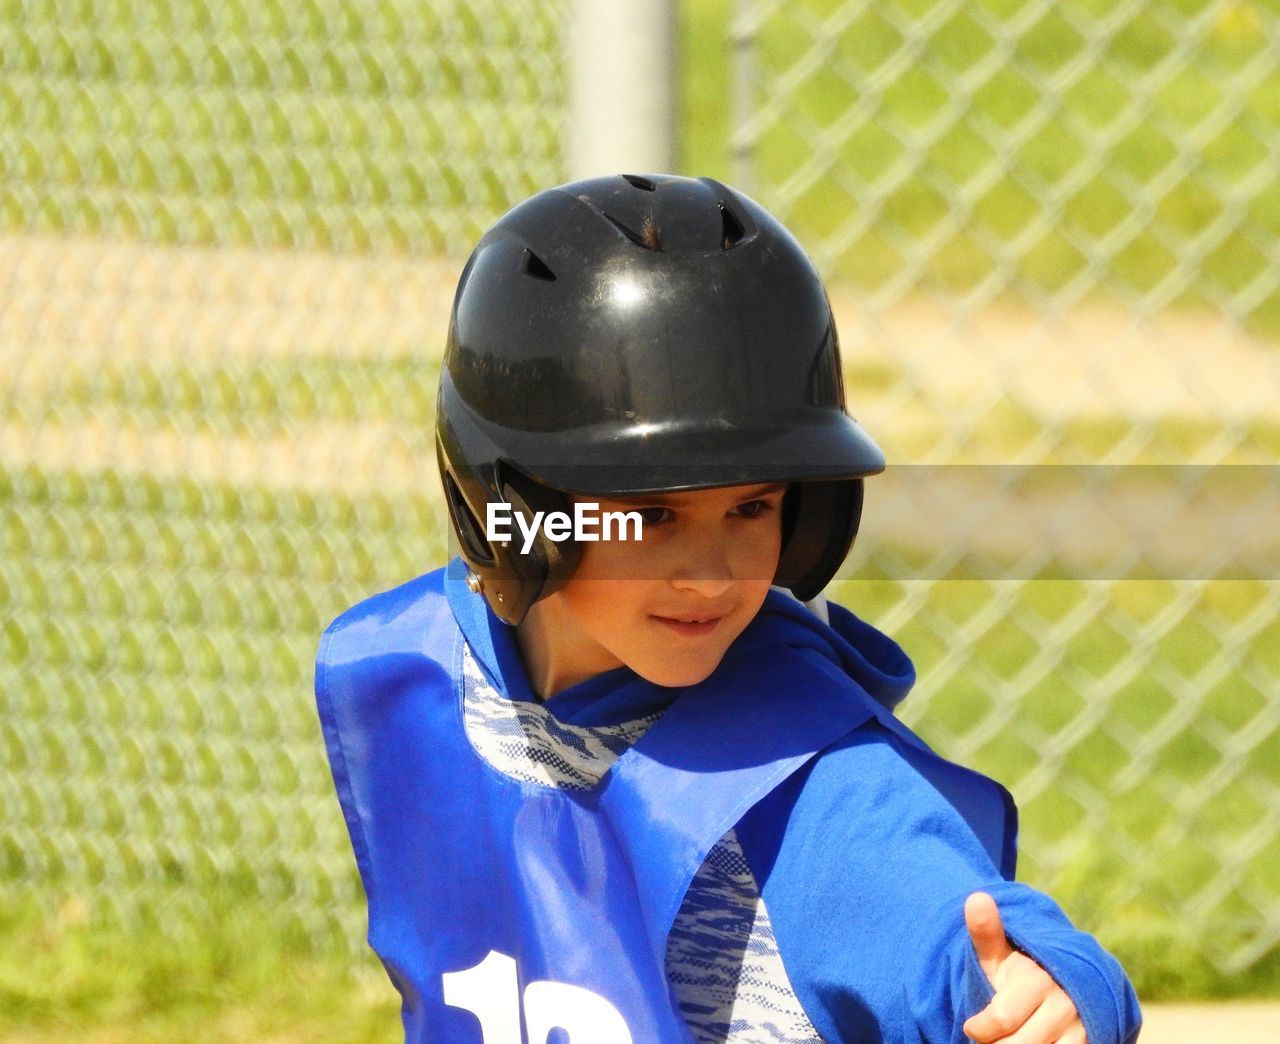 Portrait of boy wearing helmet while gesturing on field